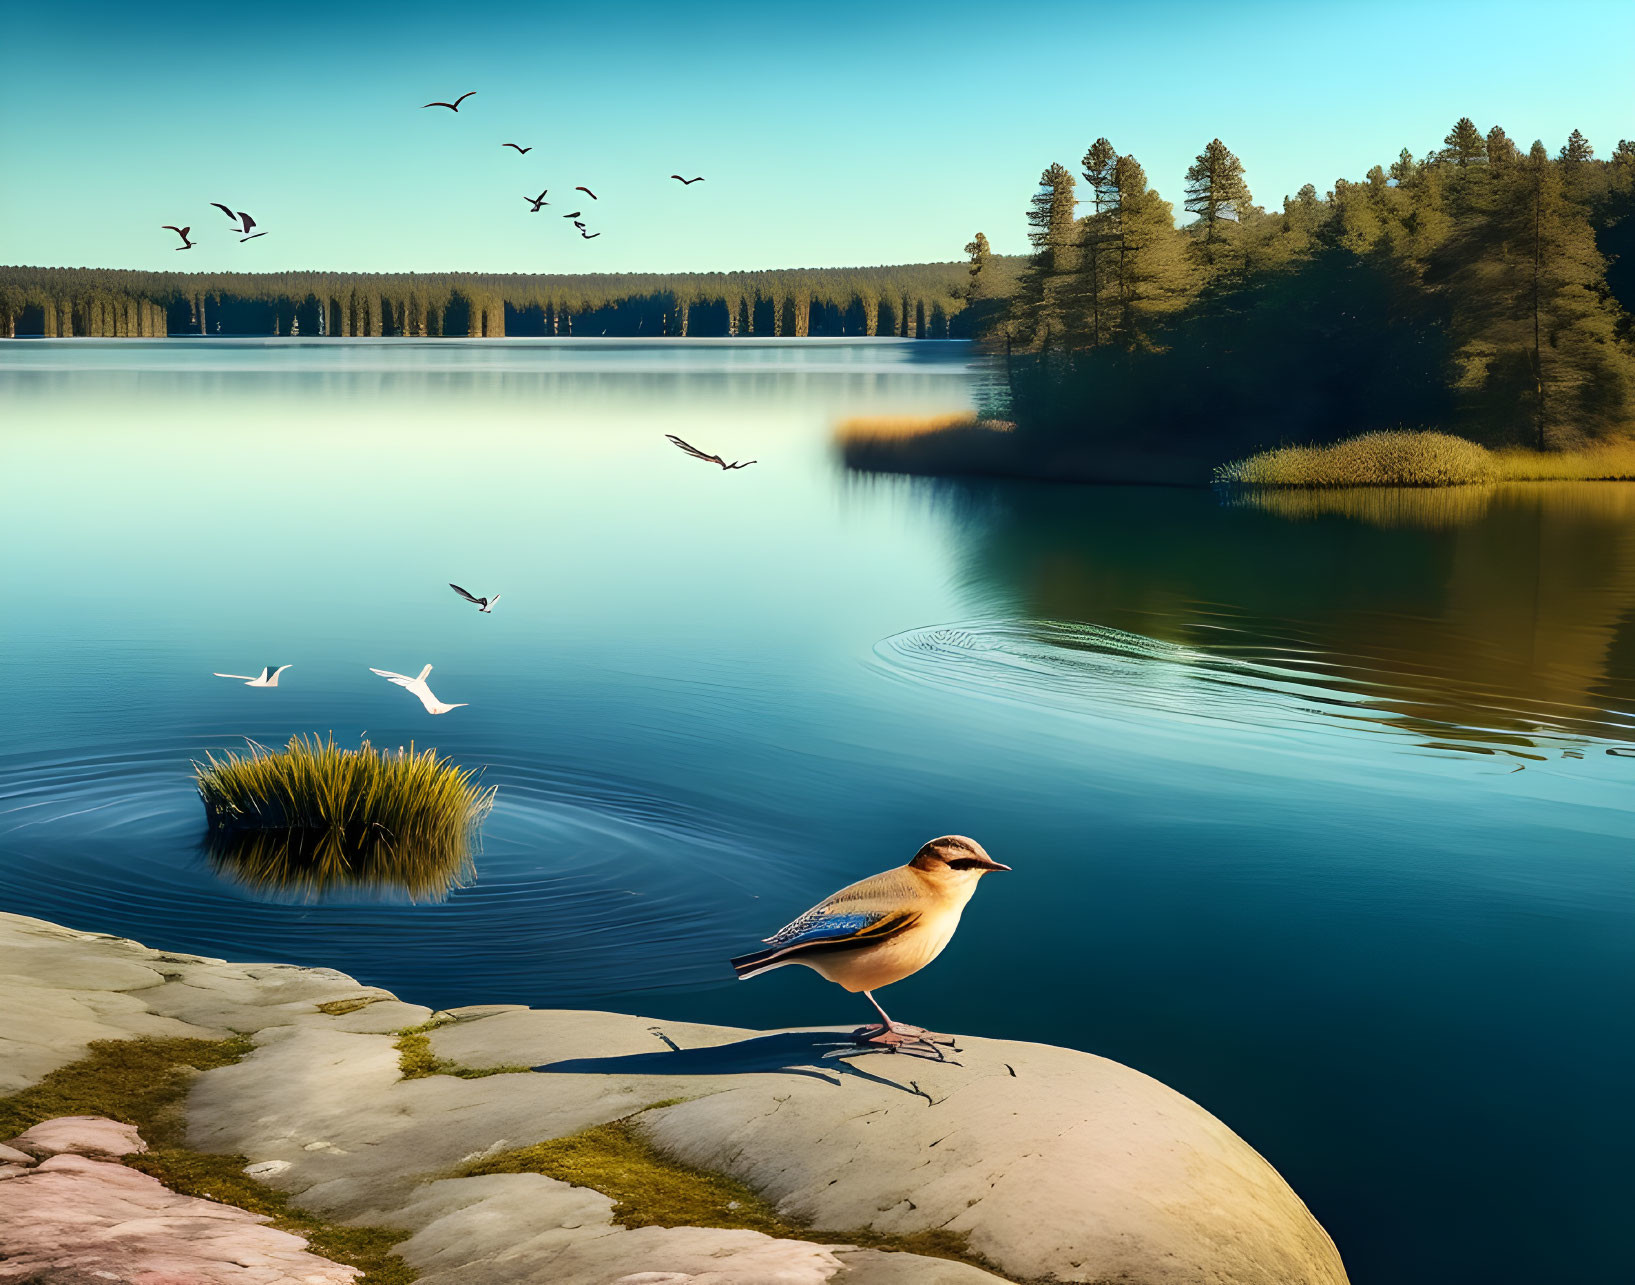 A little bird soars freely across the lake, leavin